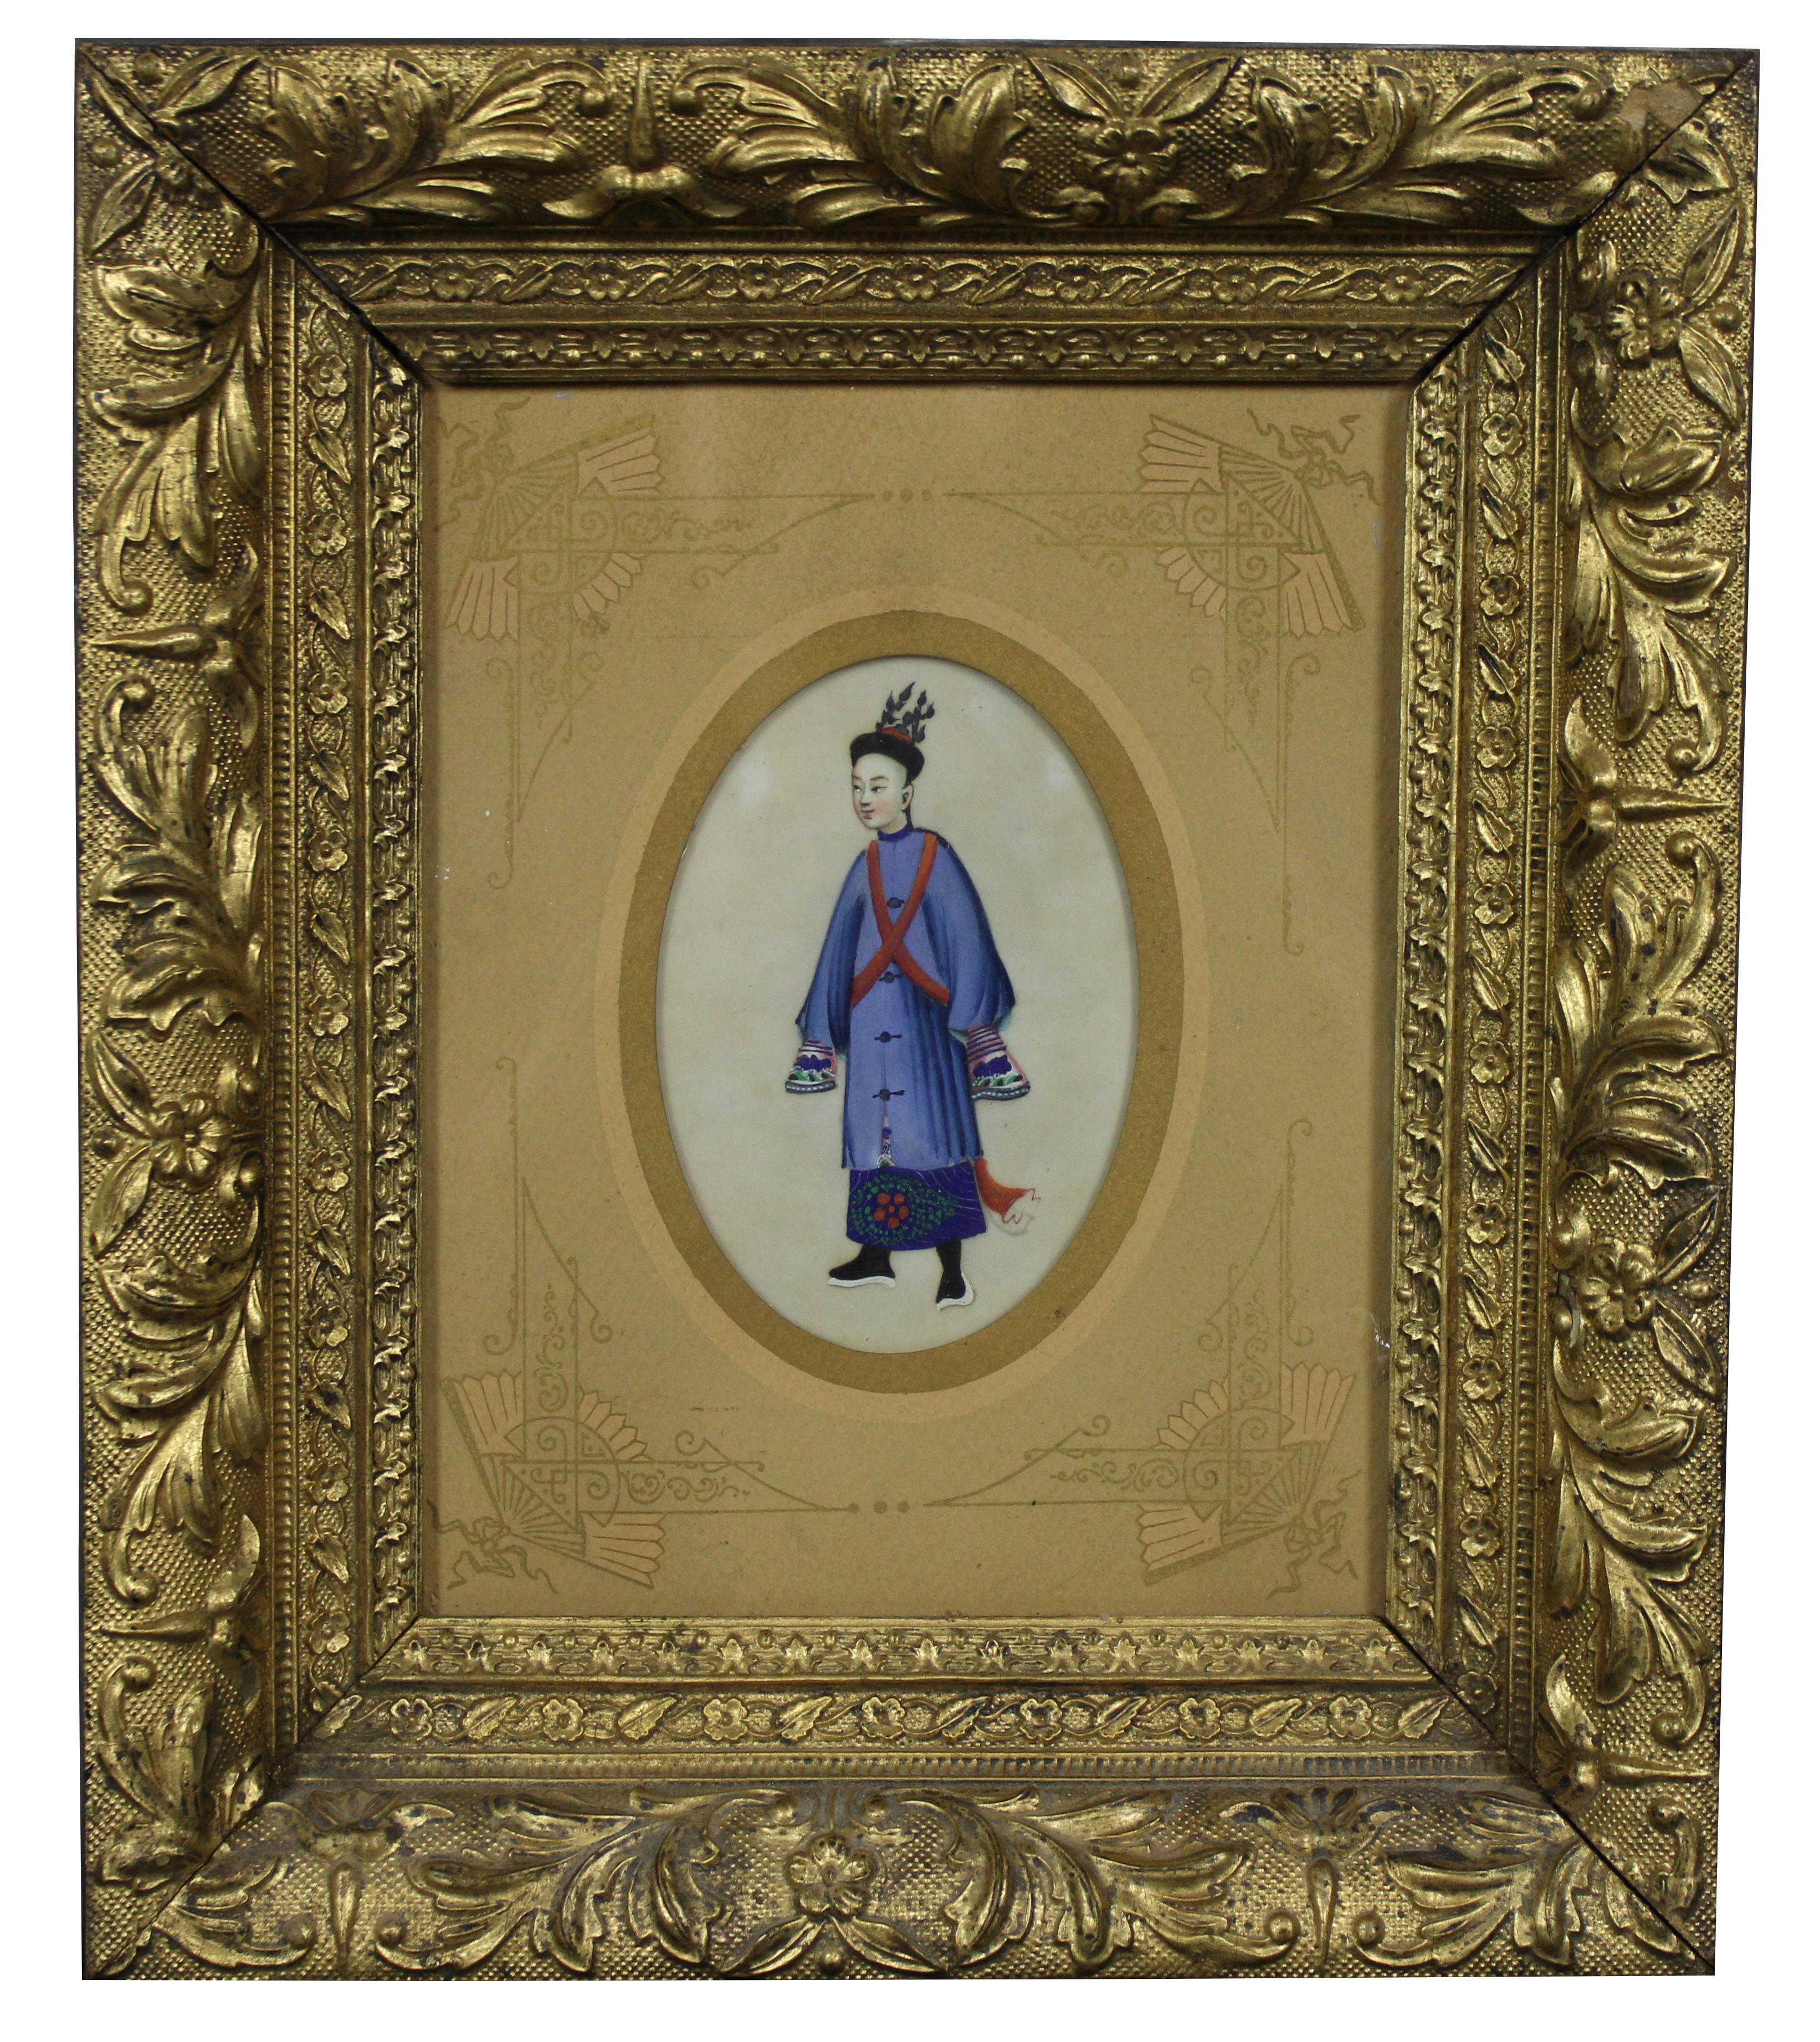 Anciennes peintures à l'aquarelle en papier de riz d'exportation chinoise. Il s'agit d'un homme et d'une femme en robes bleues, encadrés dans des cadres en bois doré à fleurs profondément biseautés de la période esthétique.

Mesures : 12,5 x 2,25